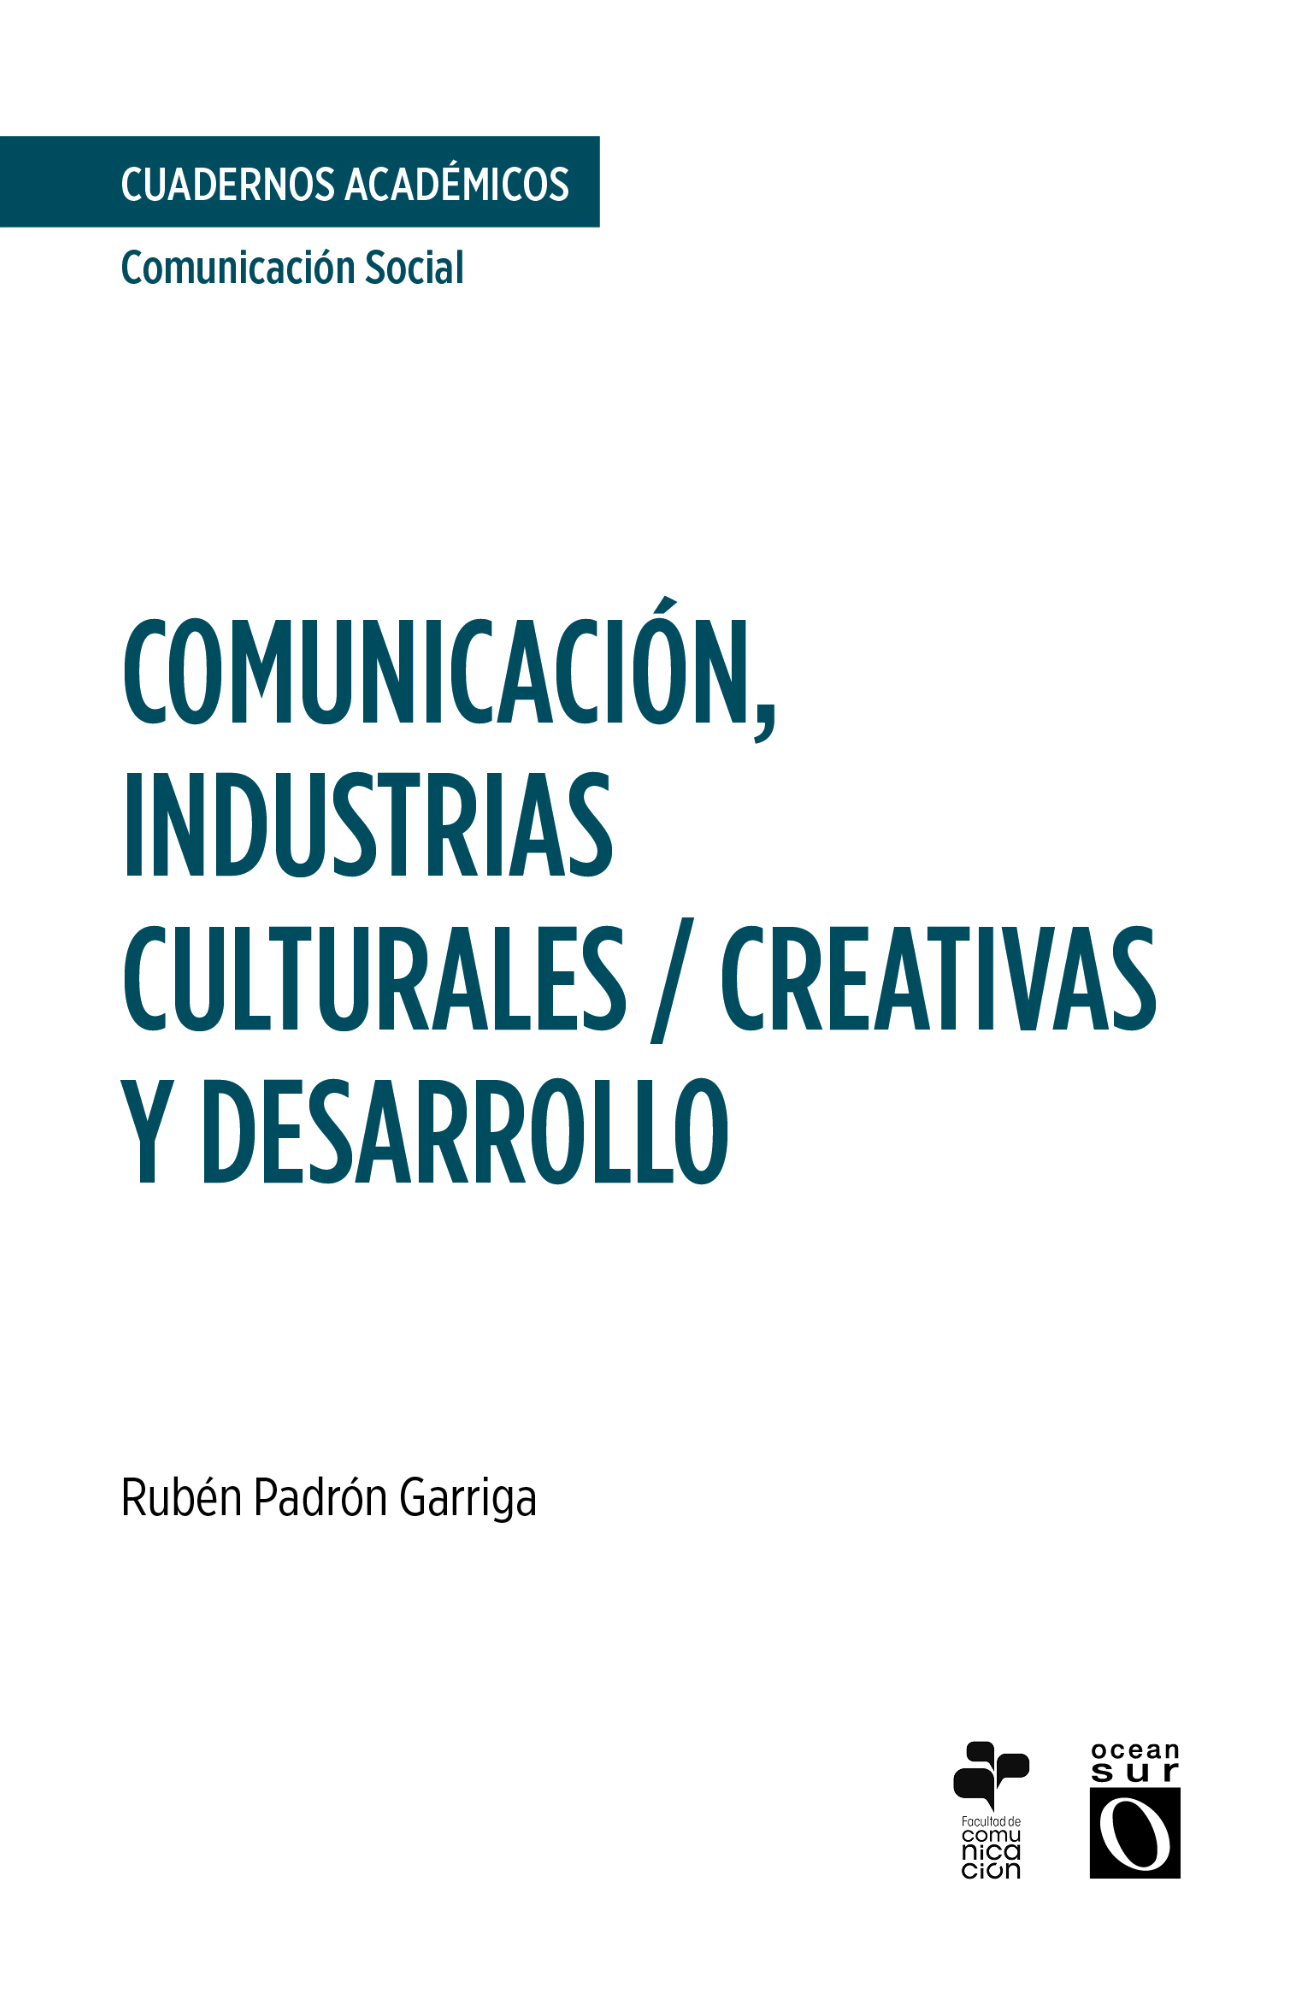 Comunicación, industrias culturales / creativas y desarrollo